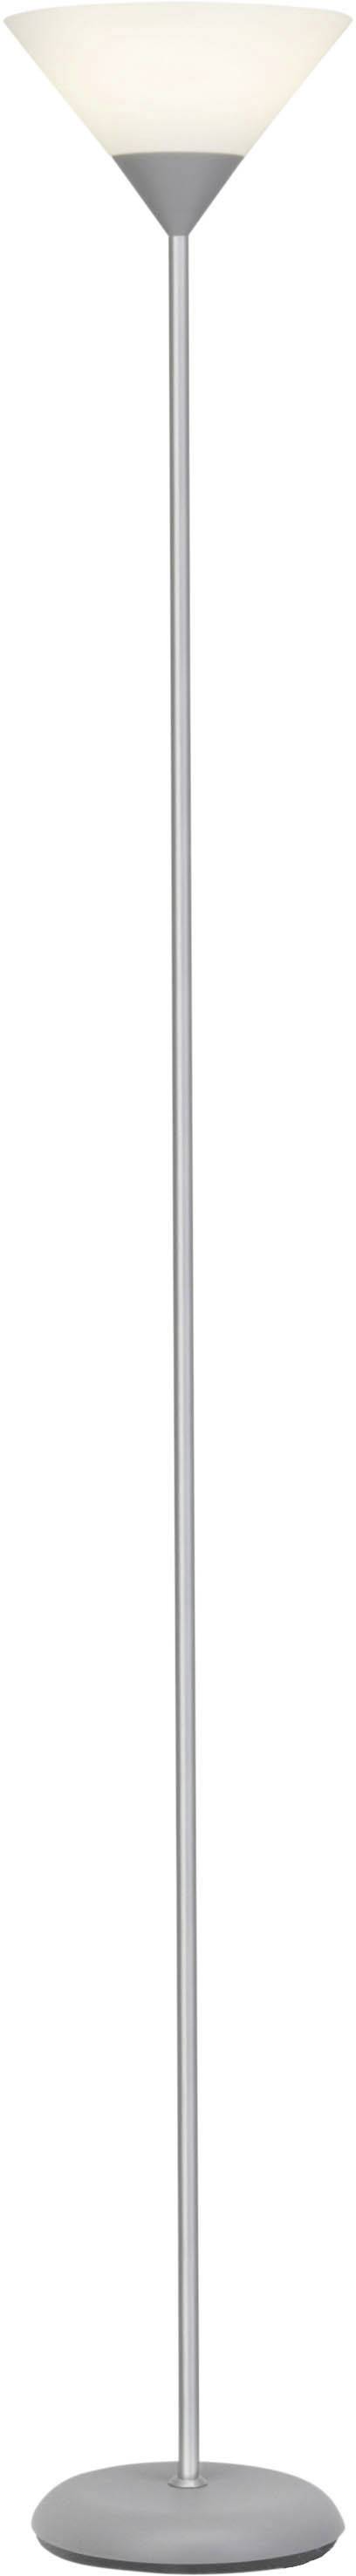 BRILLIANT Deckenfluter LED E27 9.5 W EEK: A (A++ - E) Brilliant Spari Silber, Weiß